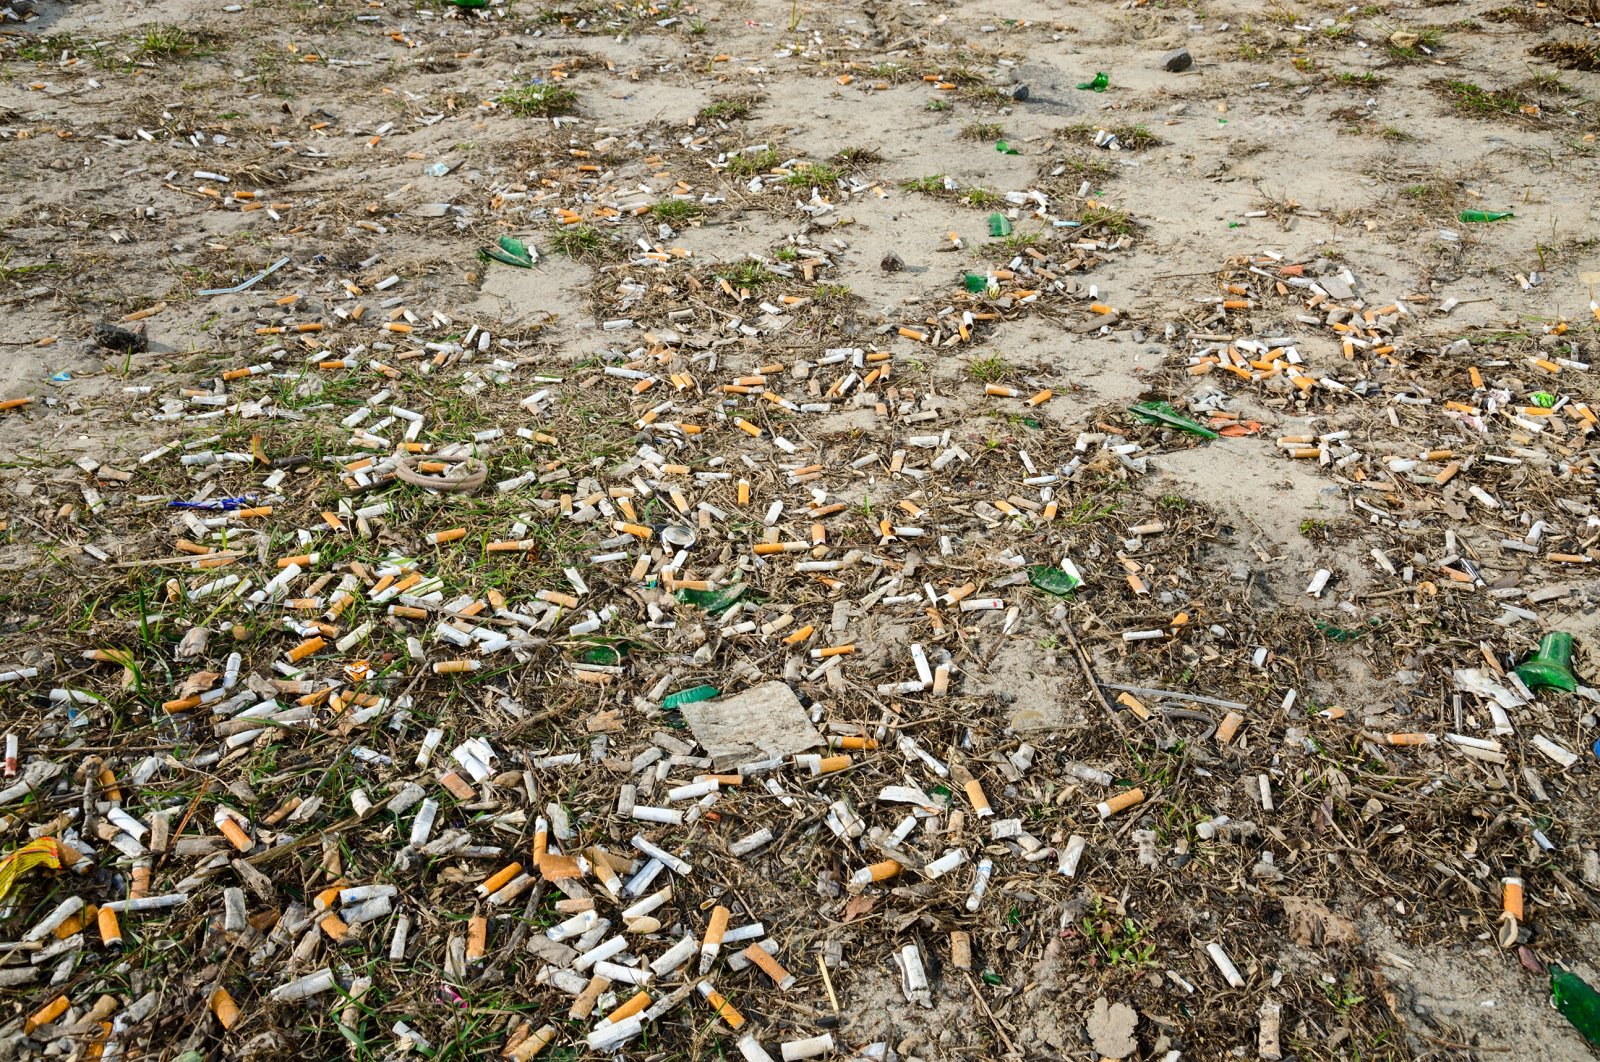 Puntung rokok mengancam lingkungan, satwa liar: Penelitian